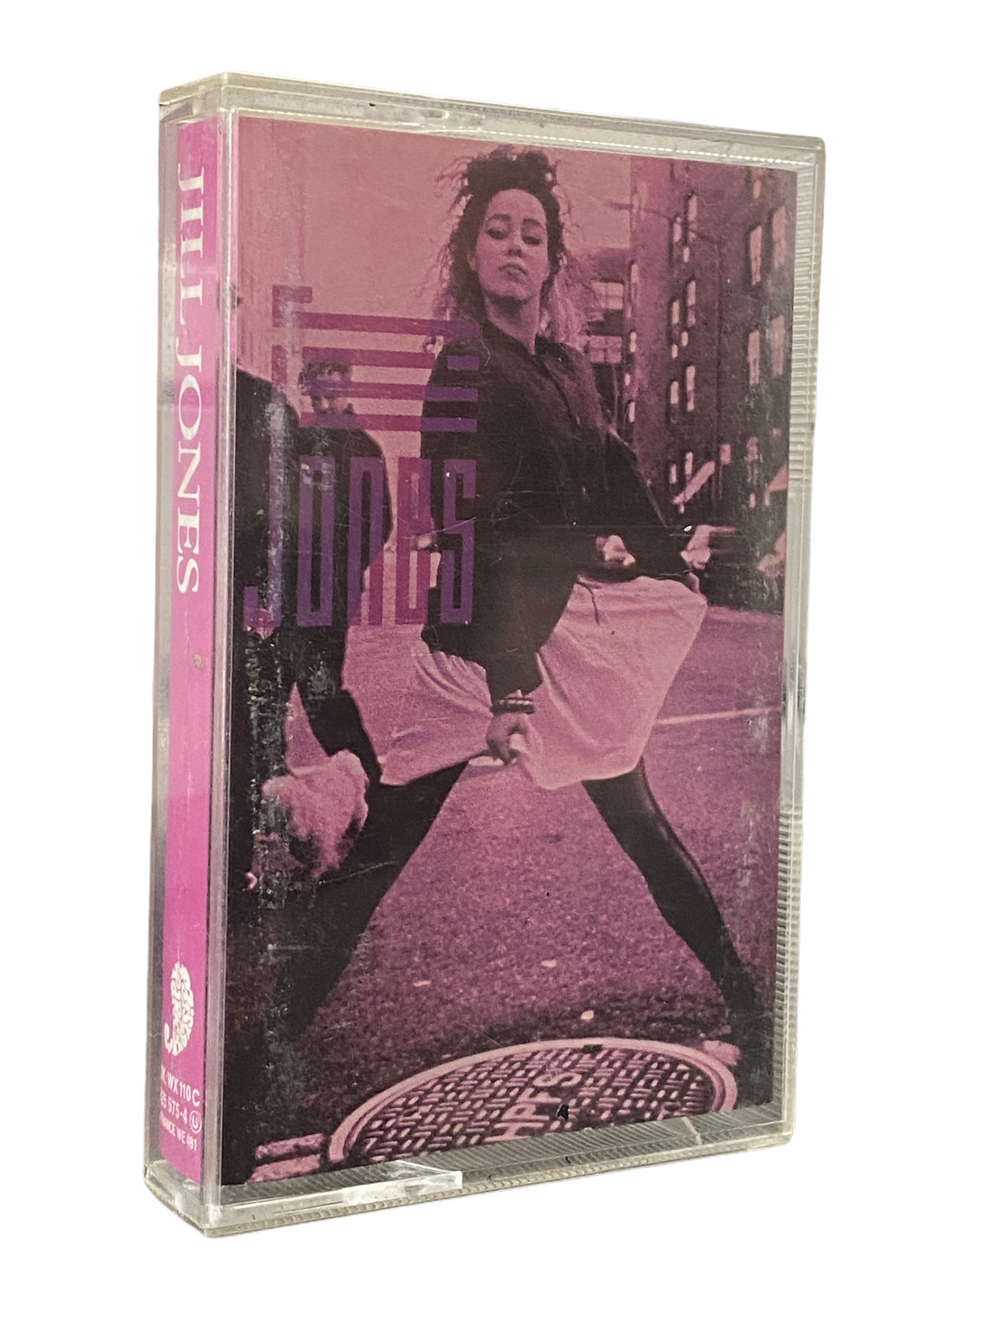 Prince – Jill Jones Self Titled Tape Cassette Album Original Release Prince WX110C